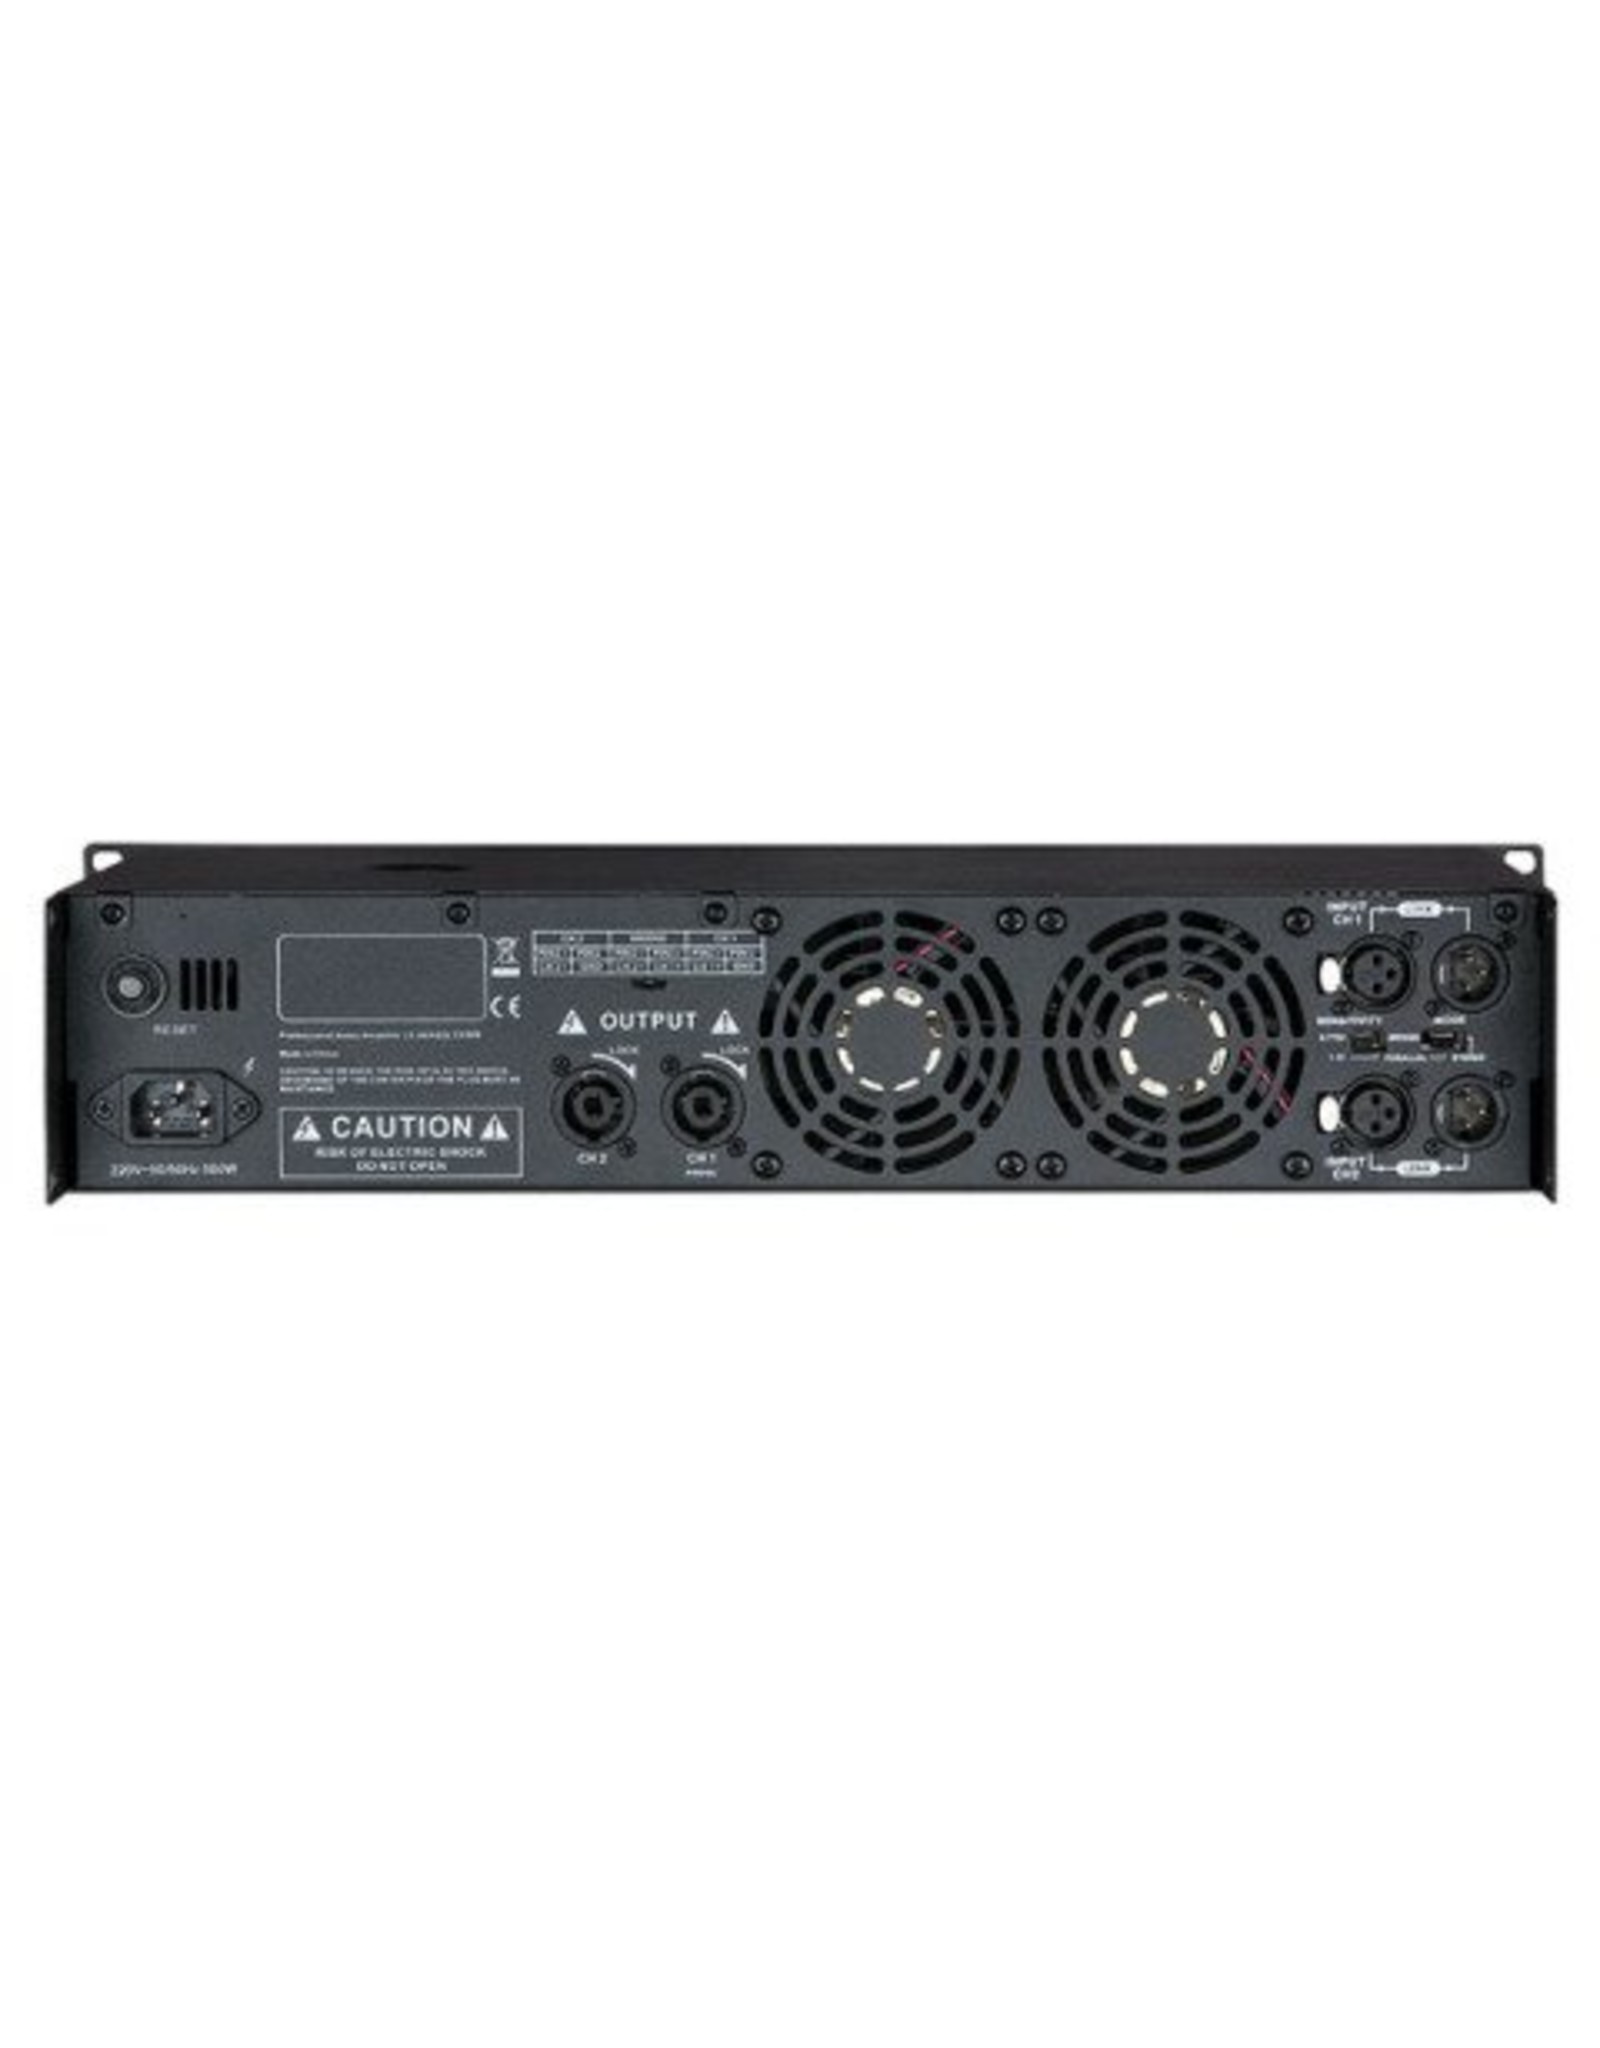 DAP audio pro DAP-Audio CX-1500 End-Verstärker